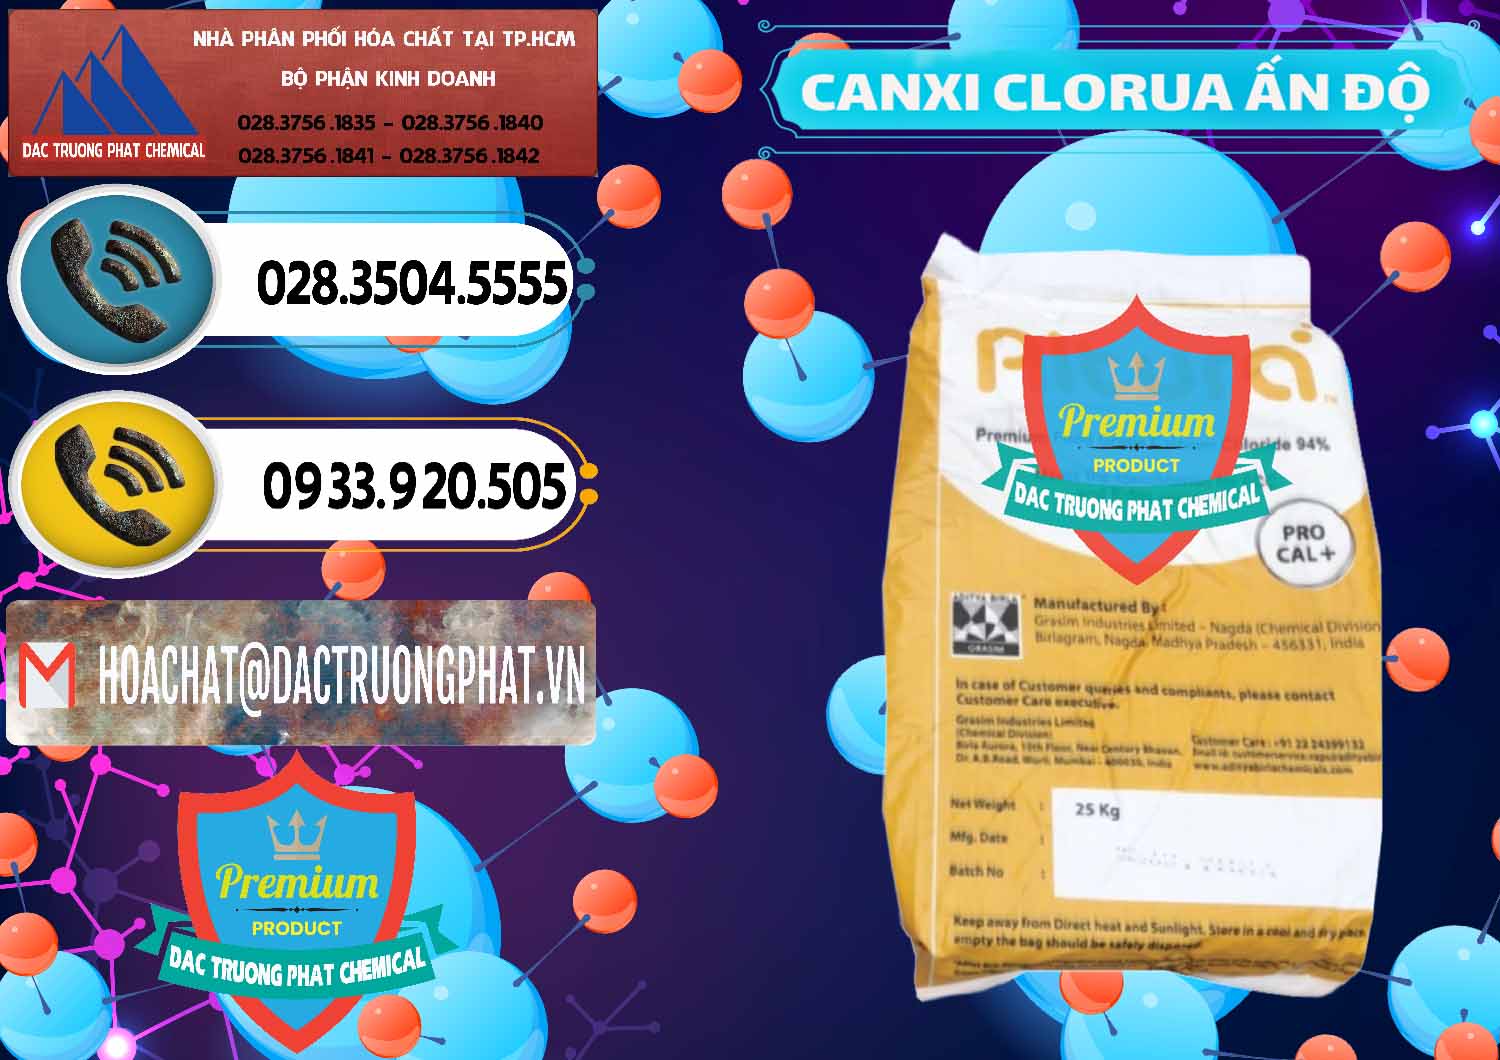 Bán _ cung cấp CaCl2 – Canxi Clorua Food Grade Altura Aditya Birla Grasim Ấn Độ India - 0436 - Đơn vị chuyên nhập khẩu và cung cấp hóa chất tại TP.HCM - hoachatdetnhuom.vn